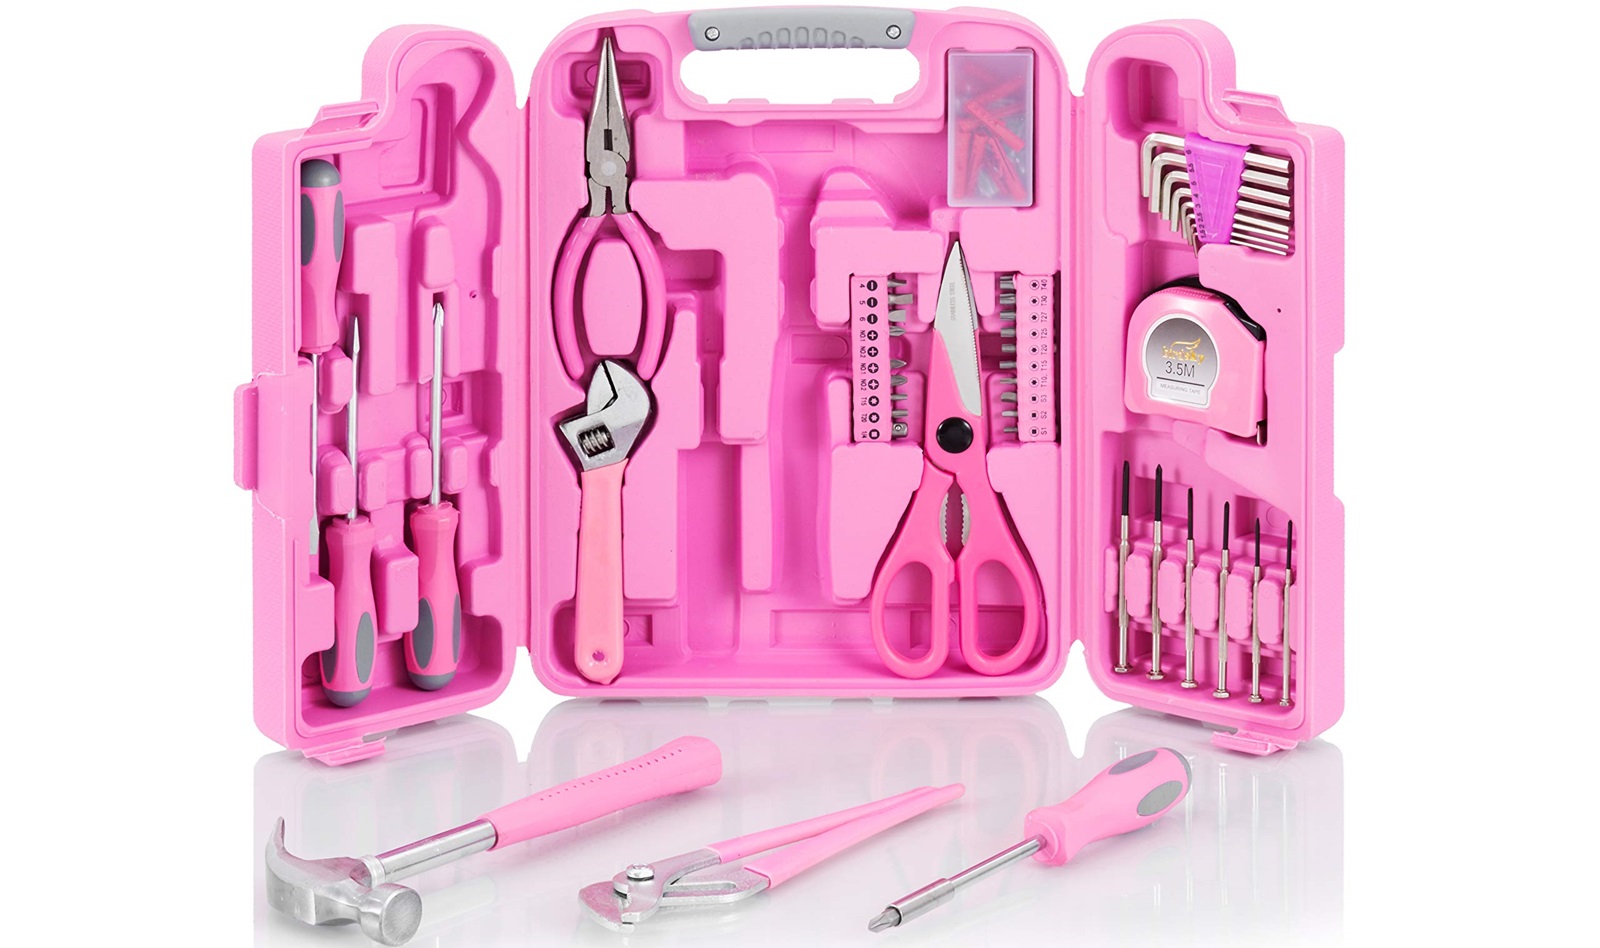 ابزار های ضروری در جعبه ابزار خانه: لیستی از ابزارهای اساسی که همیشه باید در دسترس باشند